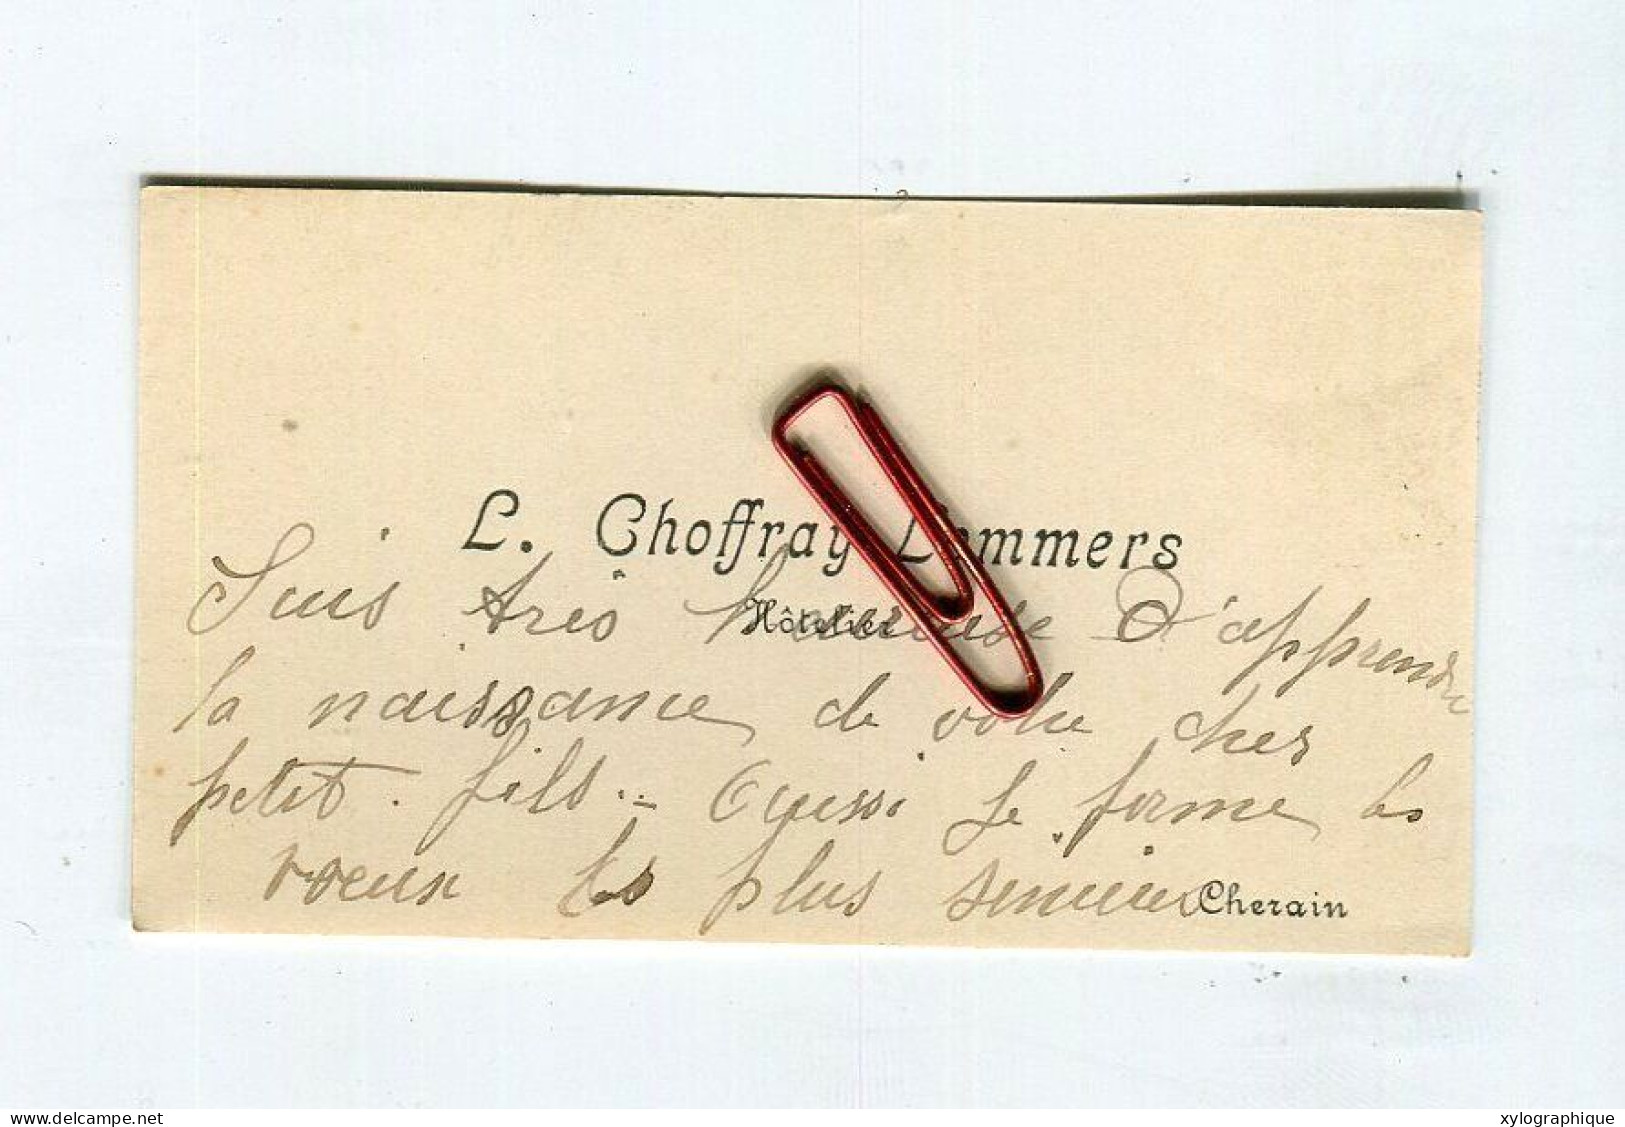 CHERAIN (Gouvy) - Carte De Visite Ca. 1930 Voir Verso L. Choffray Lommers, Hôtelier, à Famille Gérardy Warland - Visiting Cards